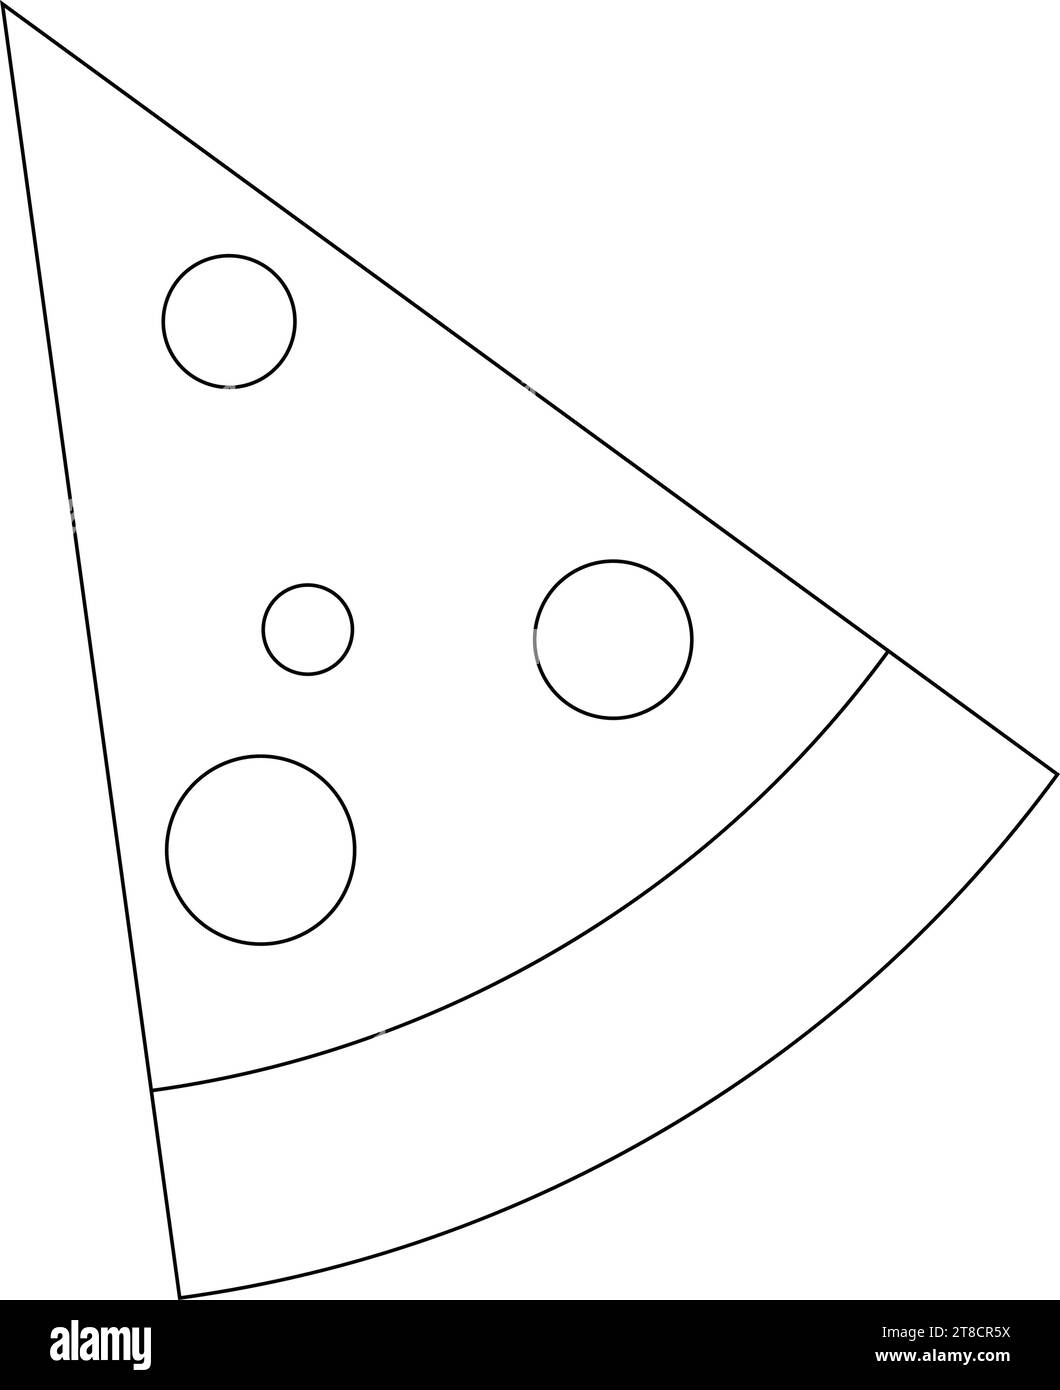 Pizza icon vector illustration design Stock Vector